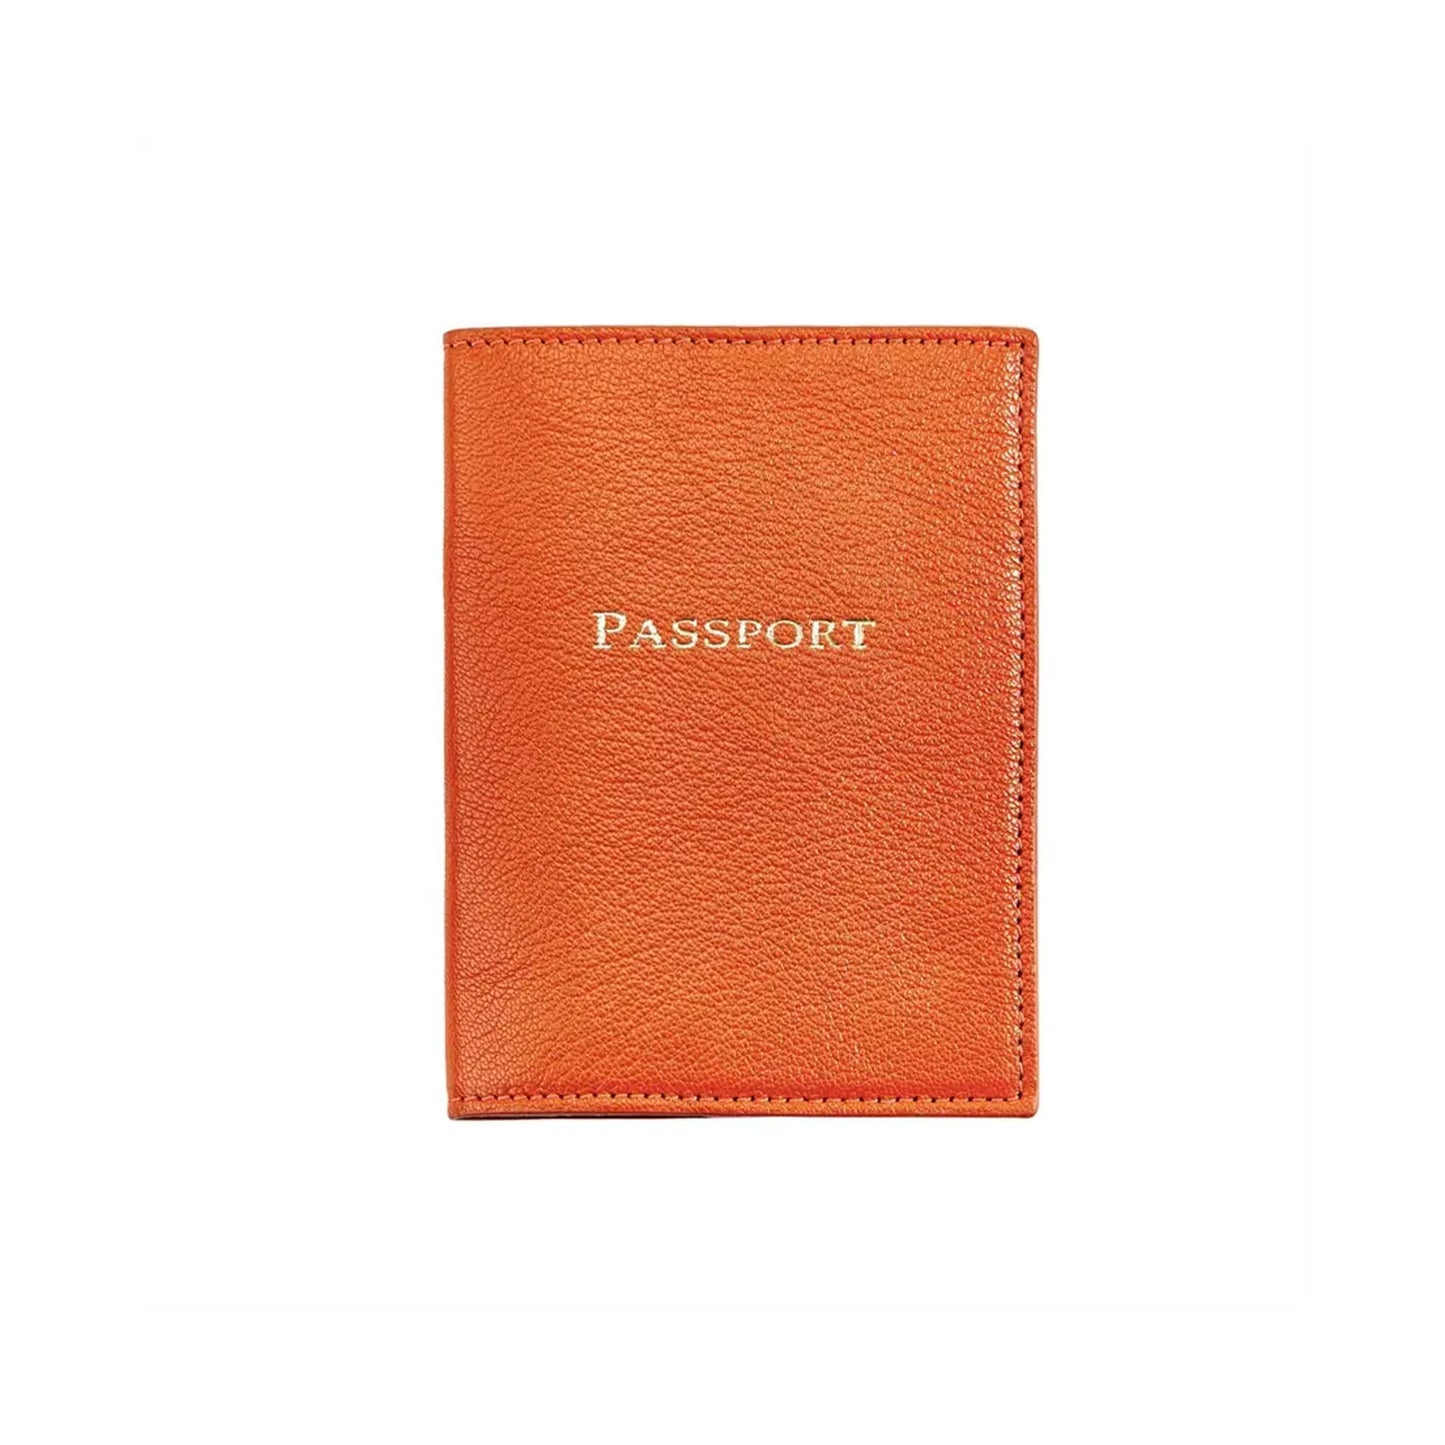 Passport Cover, Orange